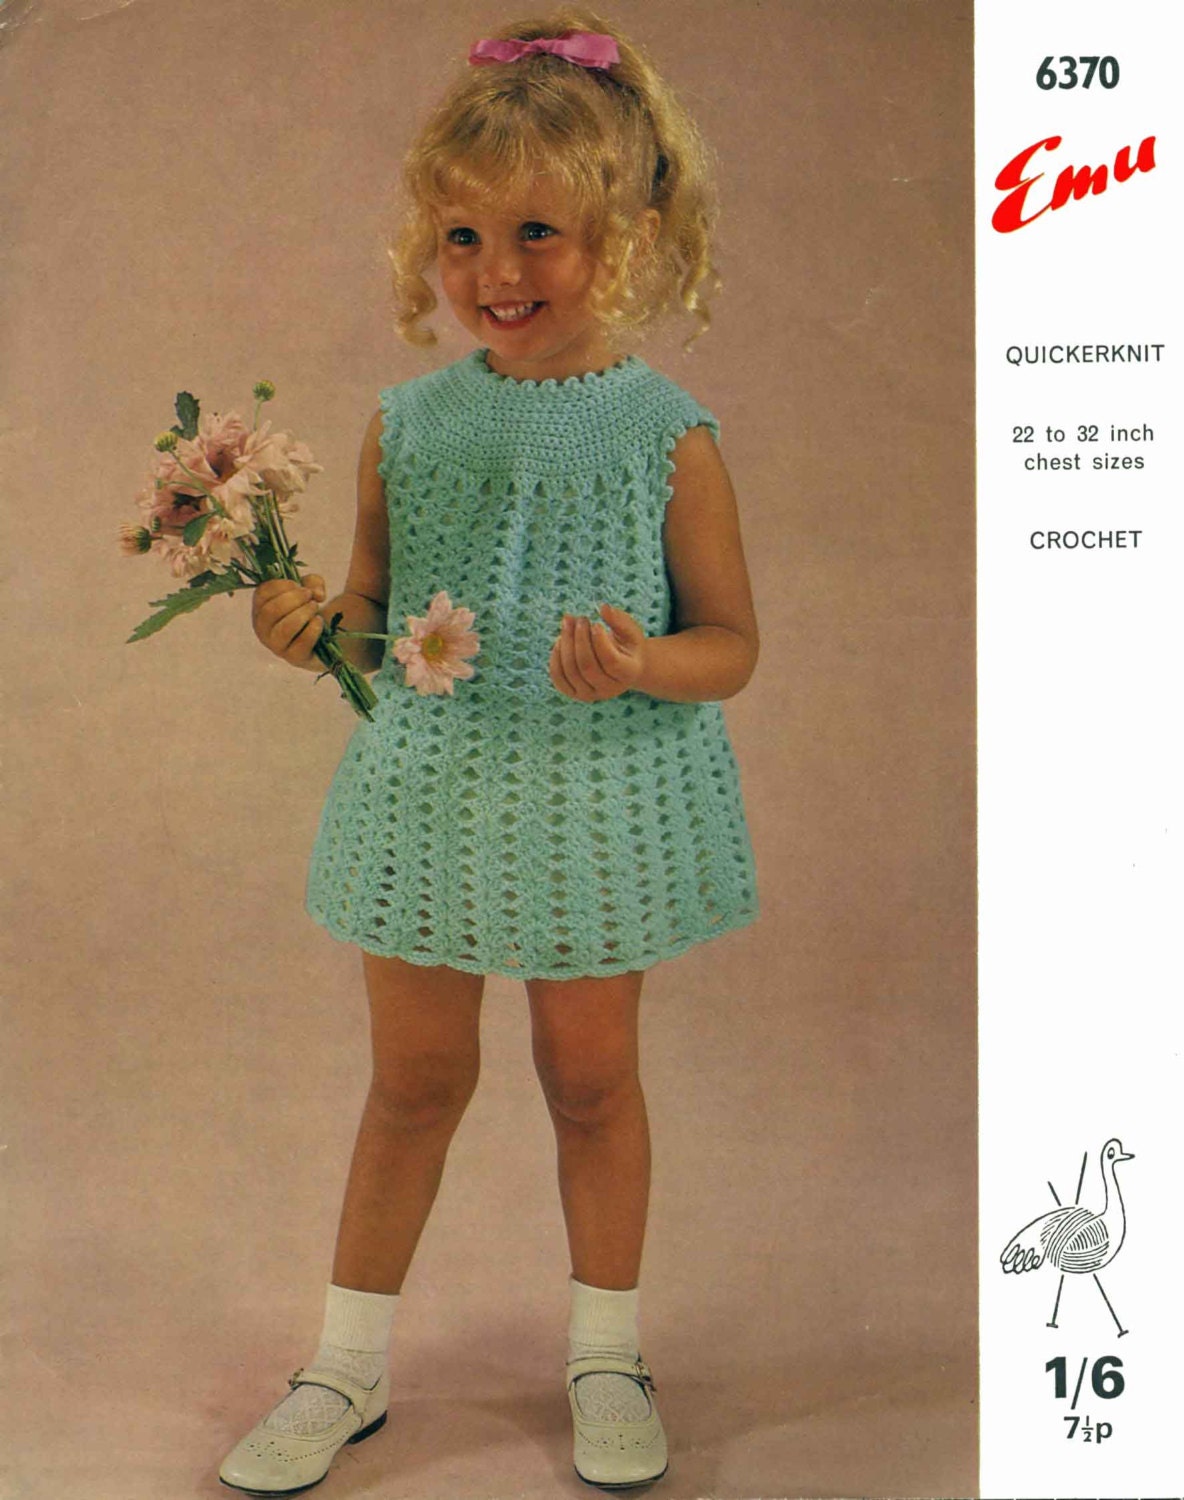 Girl Crochet Dress, 22"-32" Chest, 4ply, 70s Crochet Pattern, Emu 6370